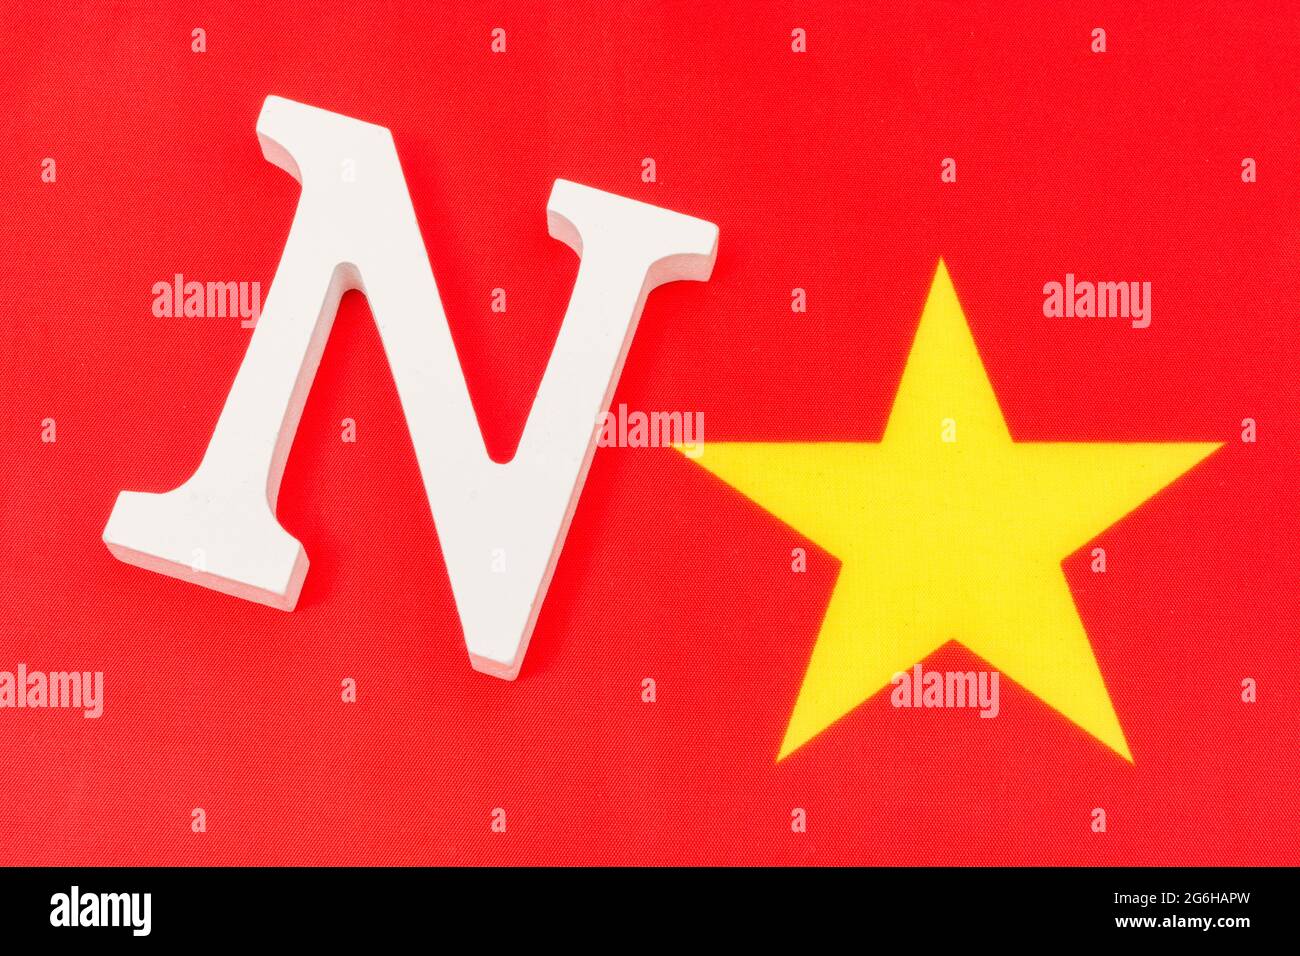 Stoff China Flagge + Holz 'N' & gelben Stern zu repräsentieren 'nein'. Für Australien und Indien China Boykott, China Menschenrechte, Philippinen China Widerstand. Stockfoto